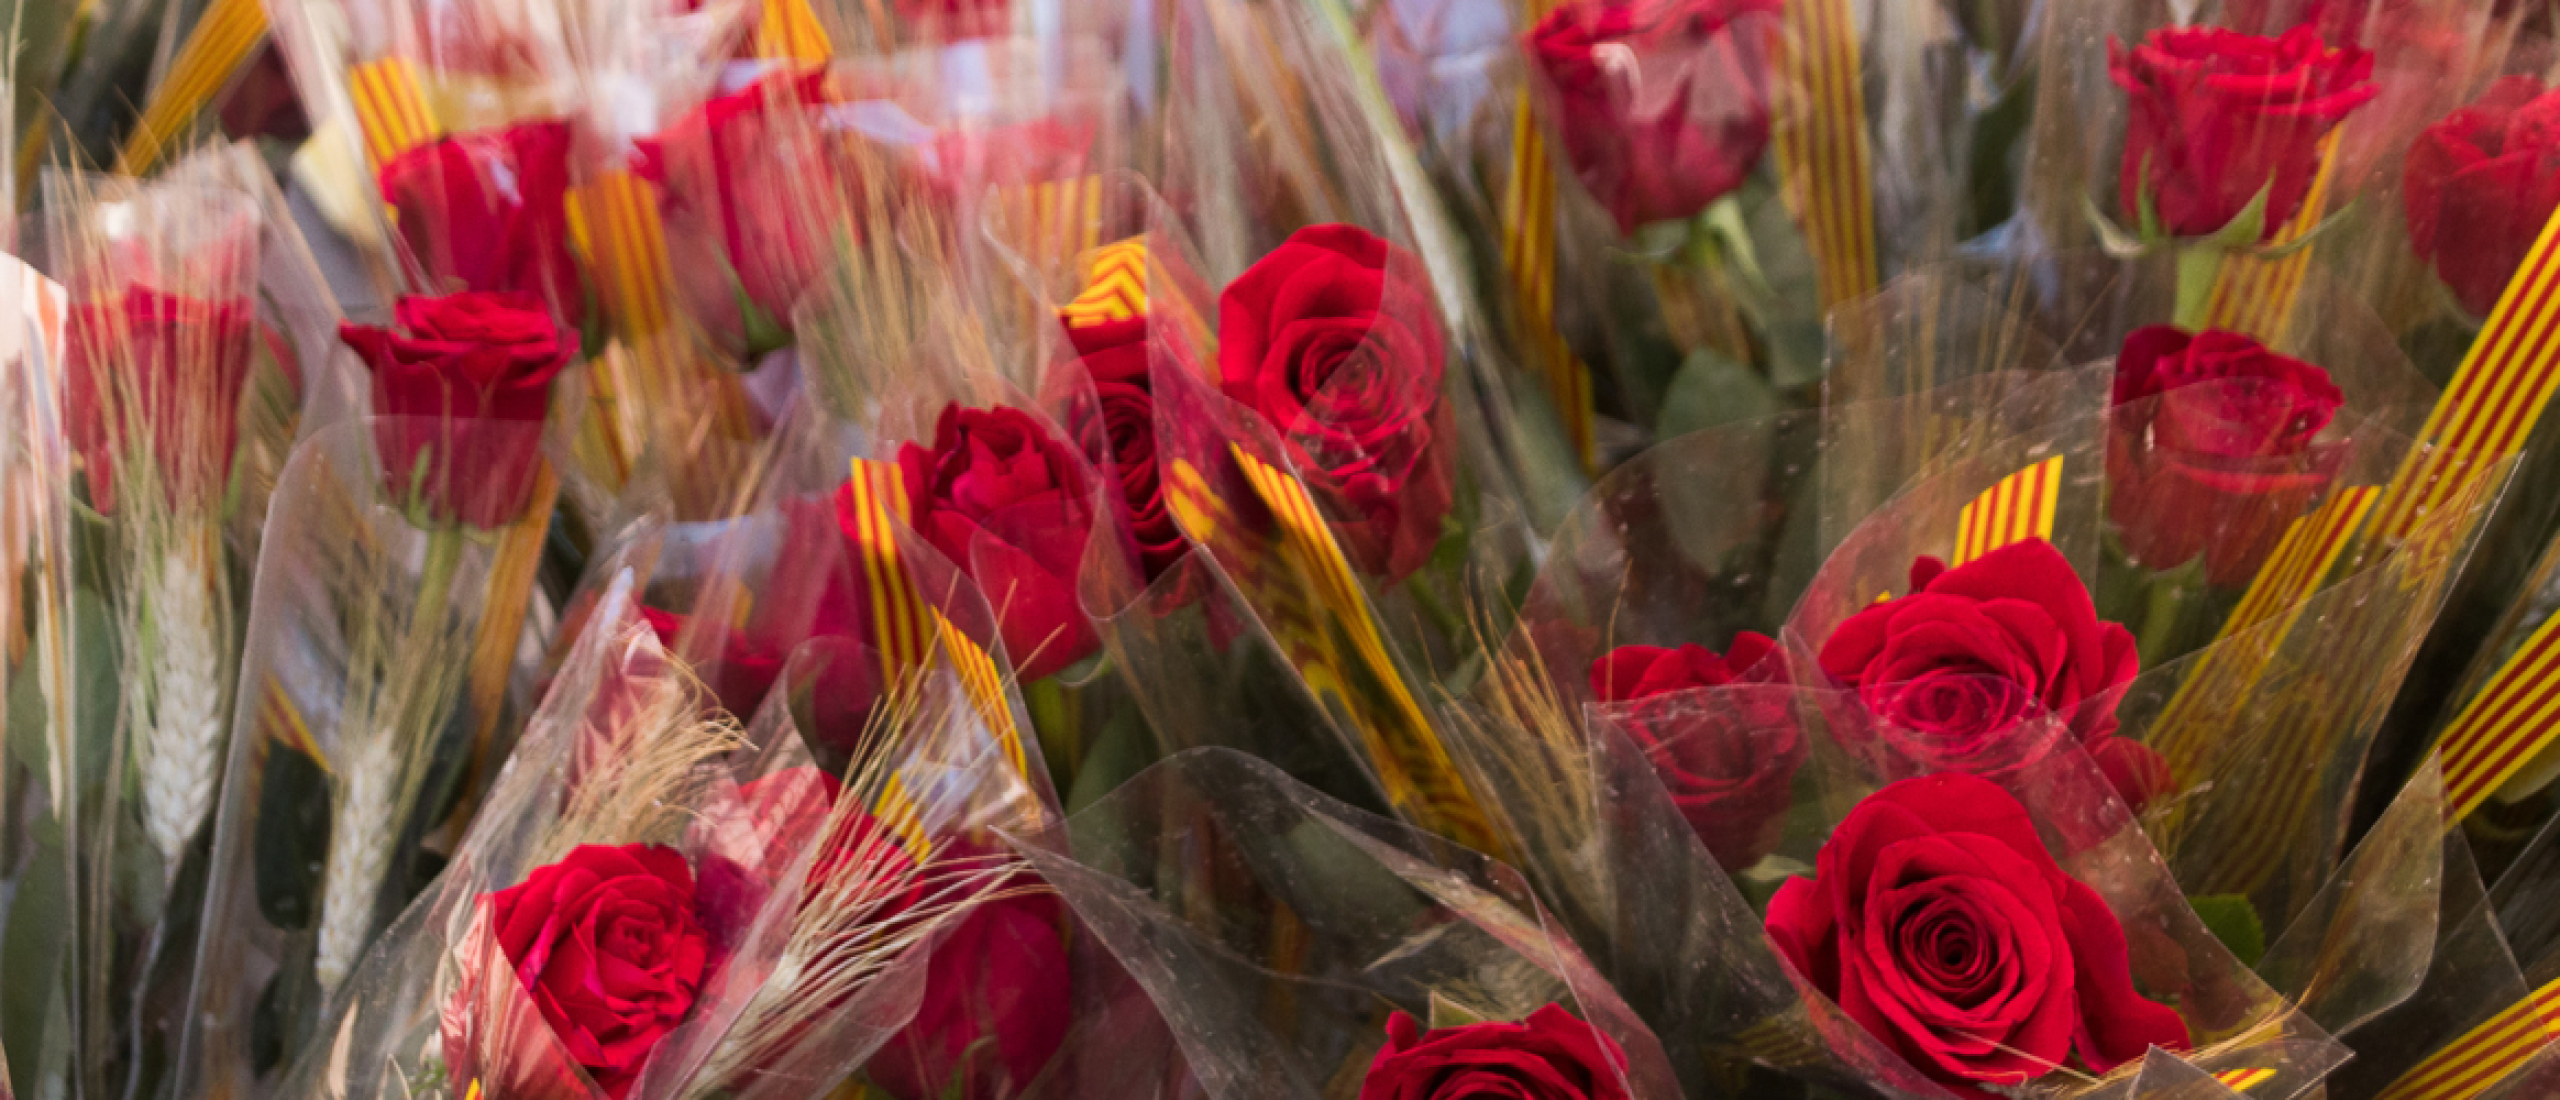 Dia de Sant Jordi, dag van de rozen en boek